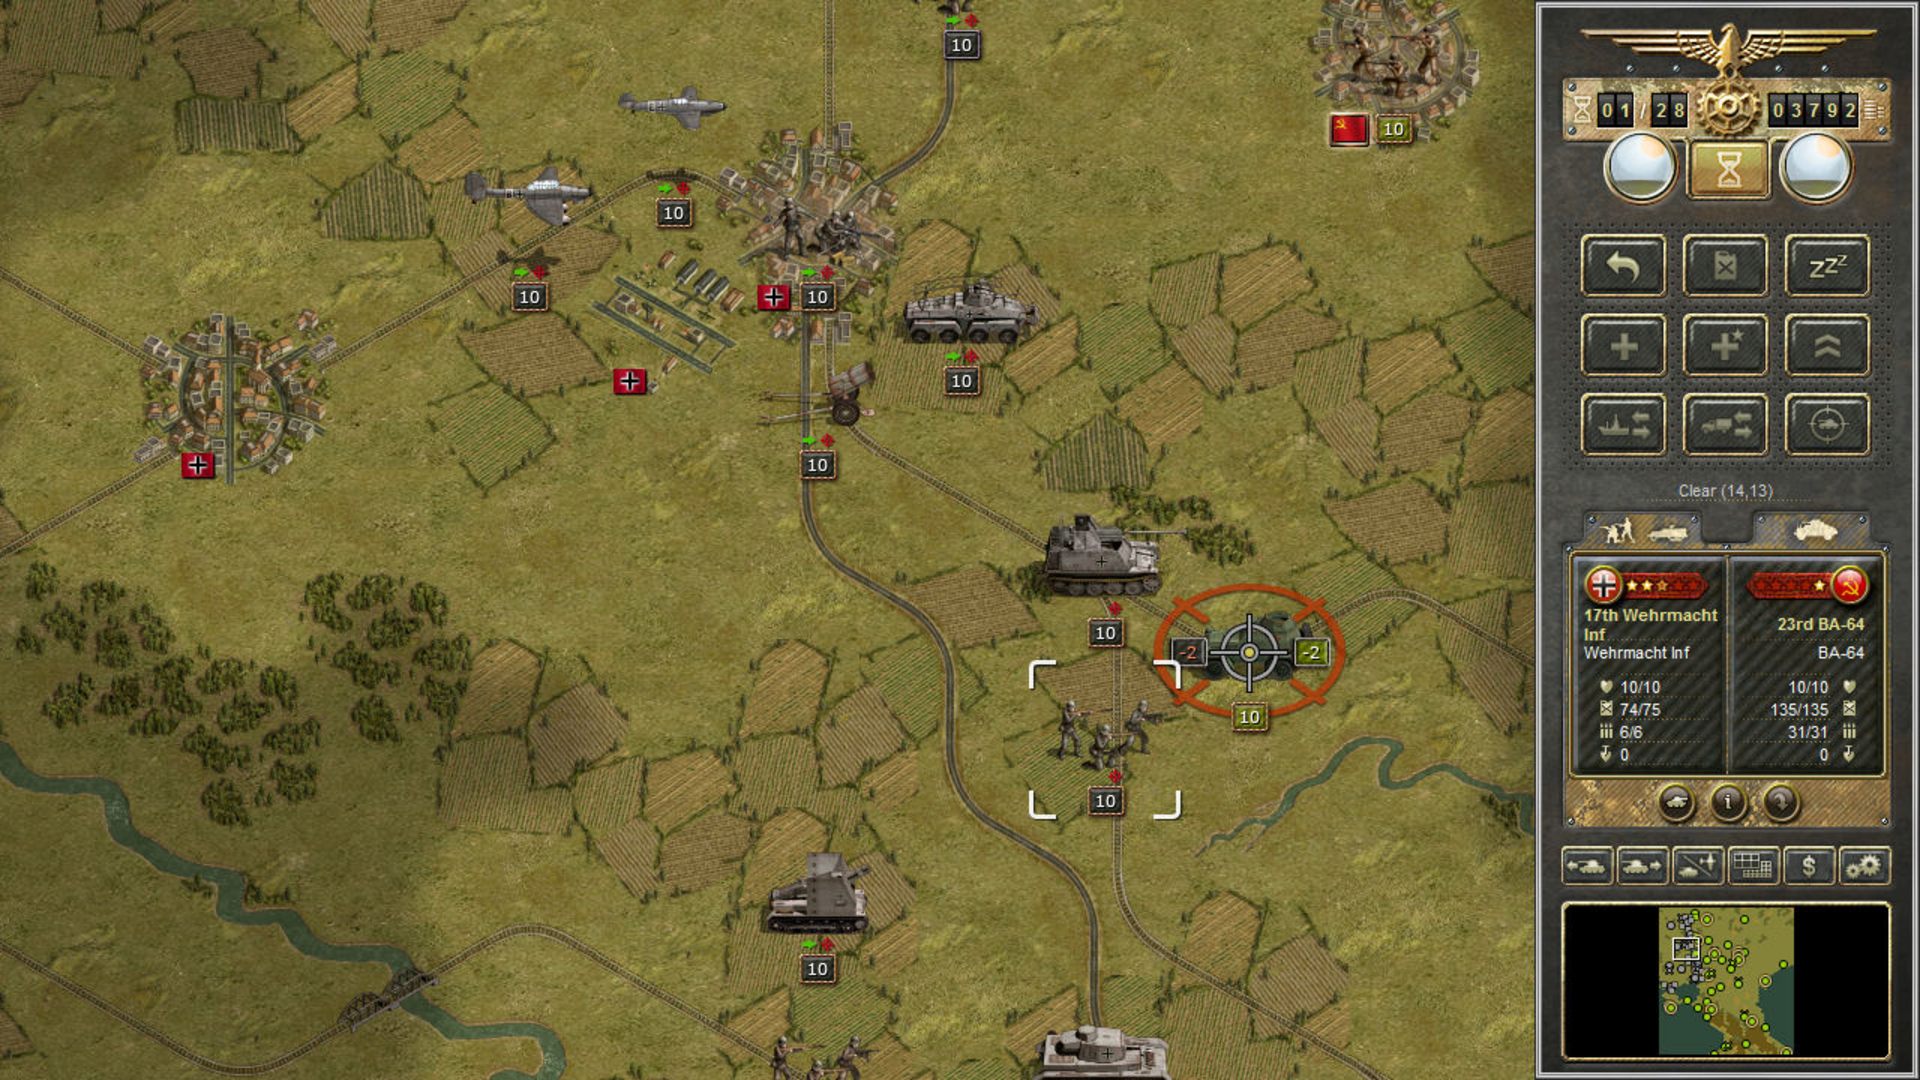 أفضل ألعاب الدبابات: Panzer Corps. تظهر الصورة الخزانات المختلفة الموضحة على خريطة الحقول